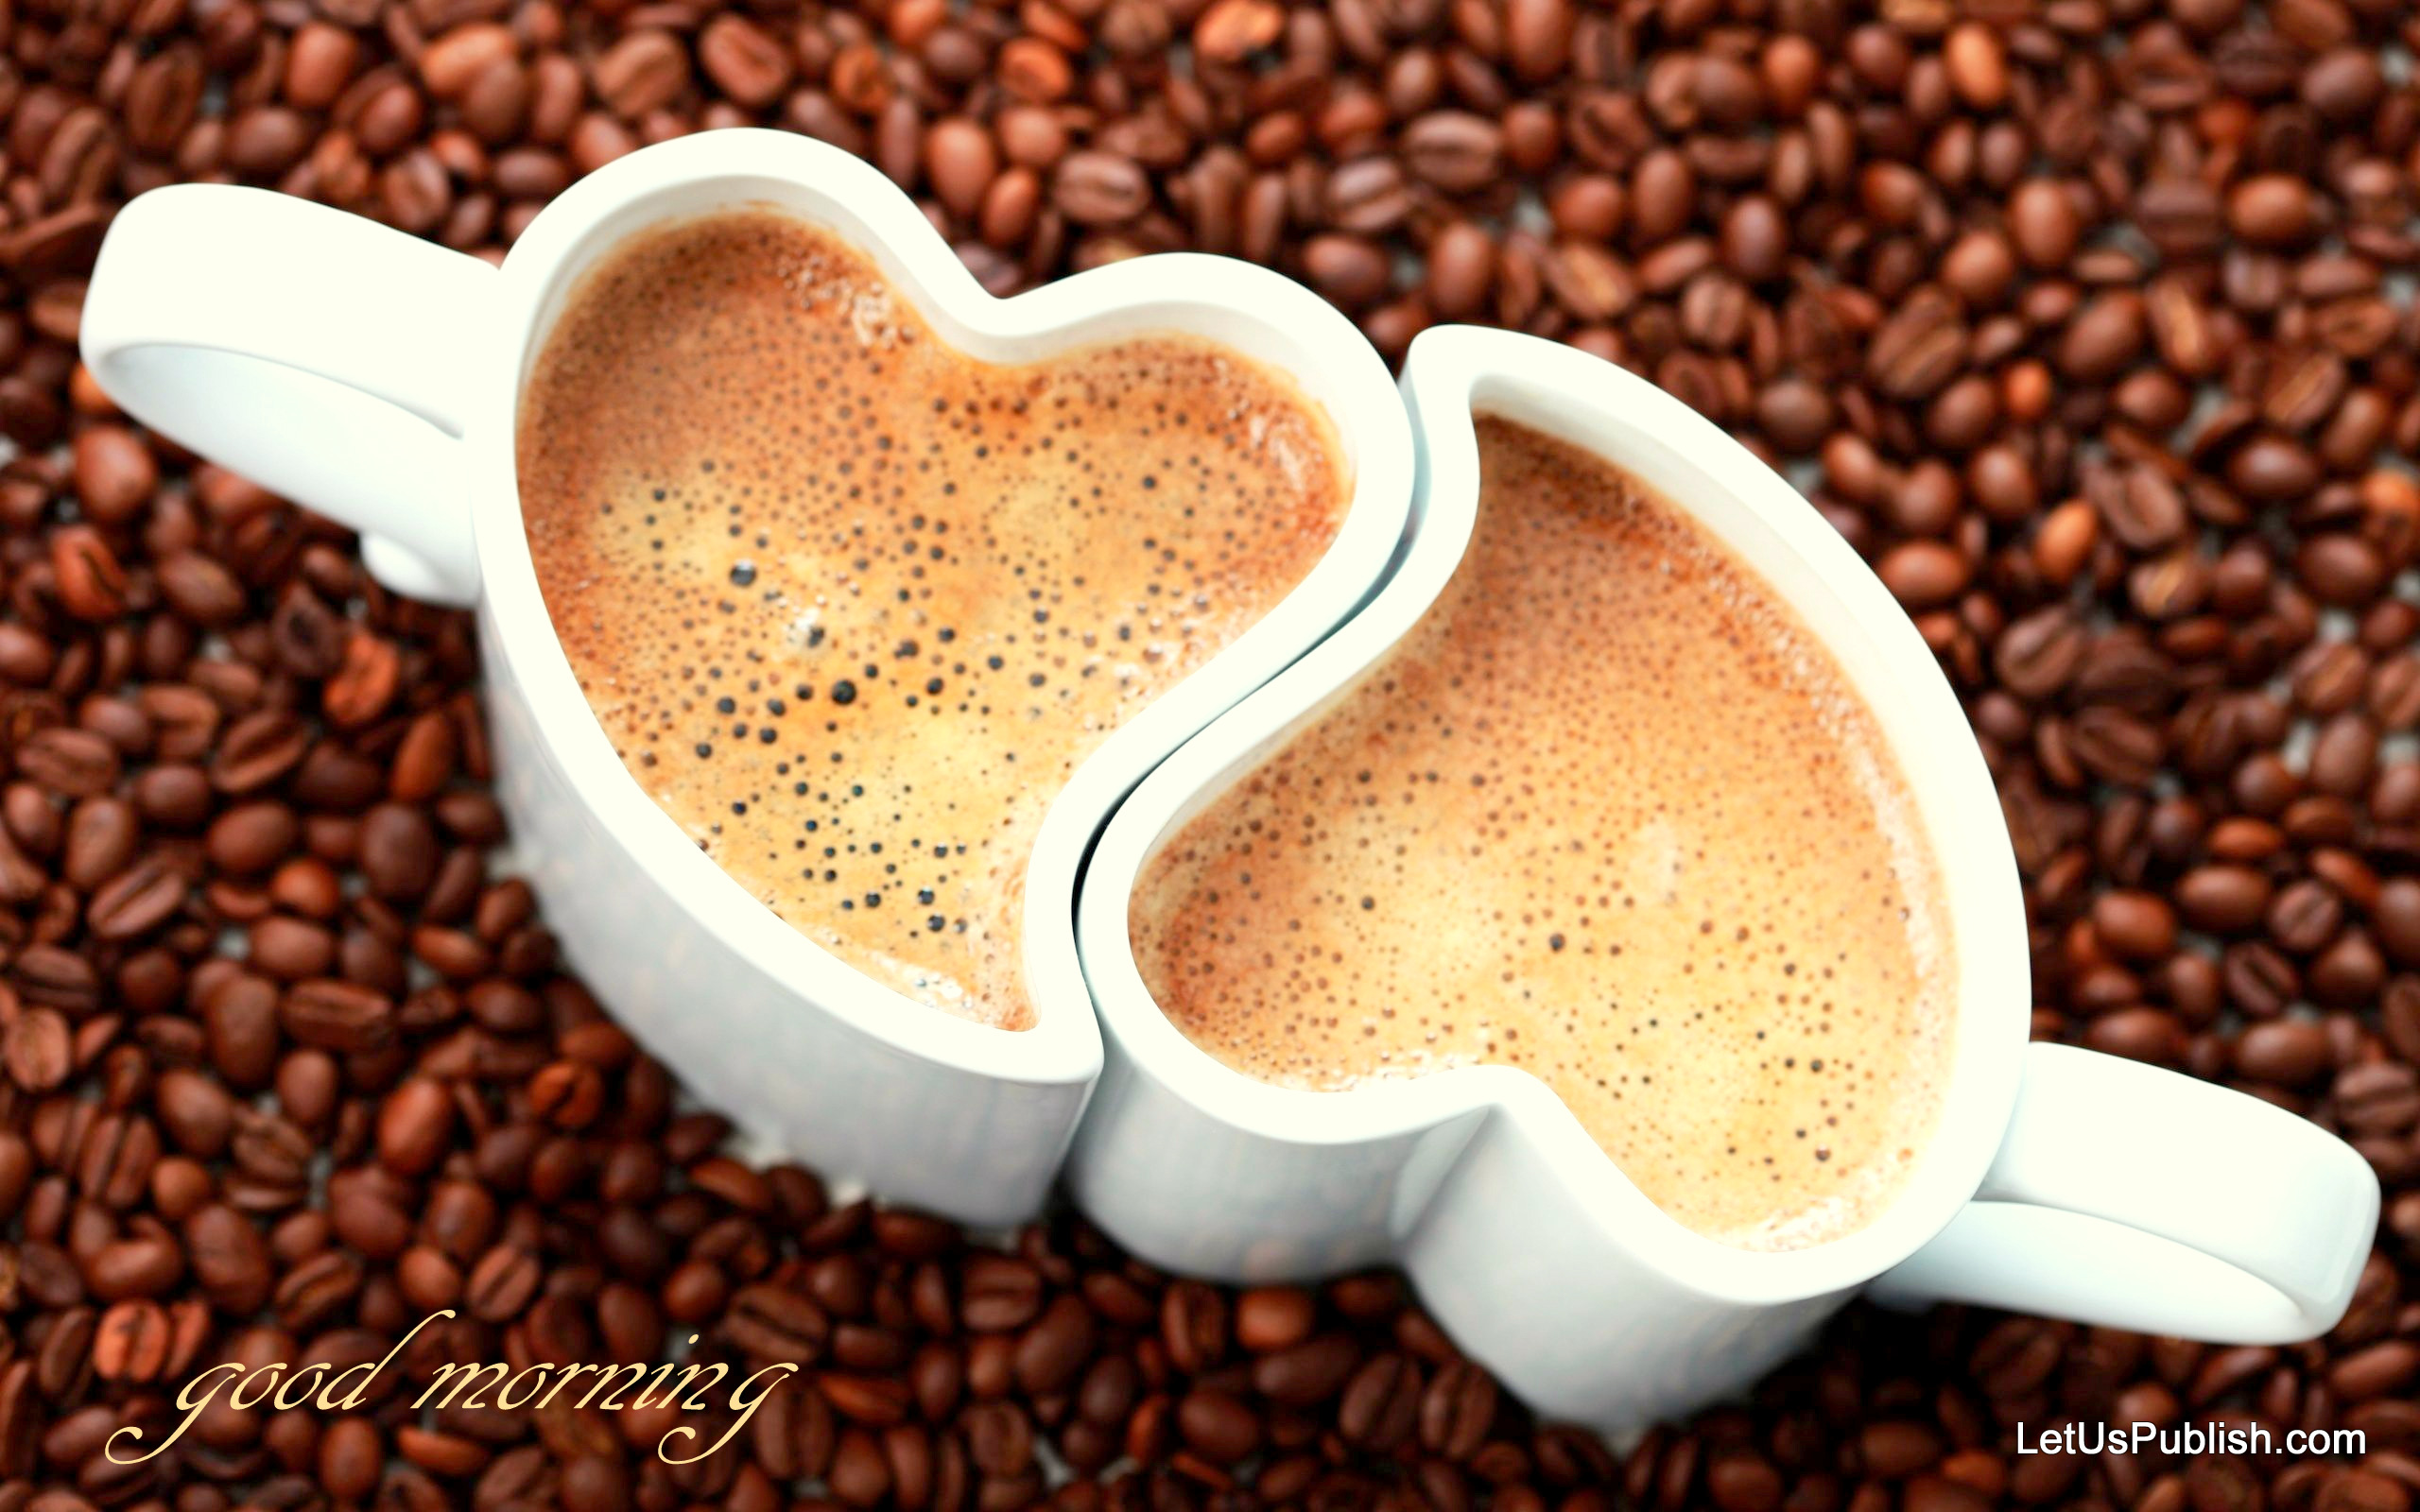 무료 좋은 아침 벽지,카페인,컵,커피 컵,우유 탄 커피,자바 커피